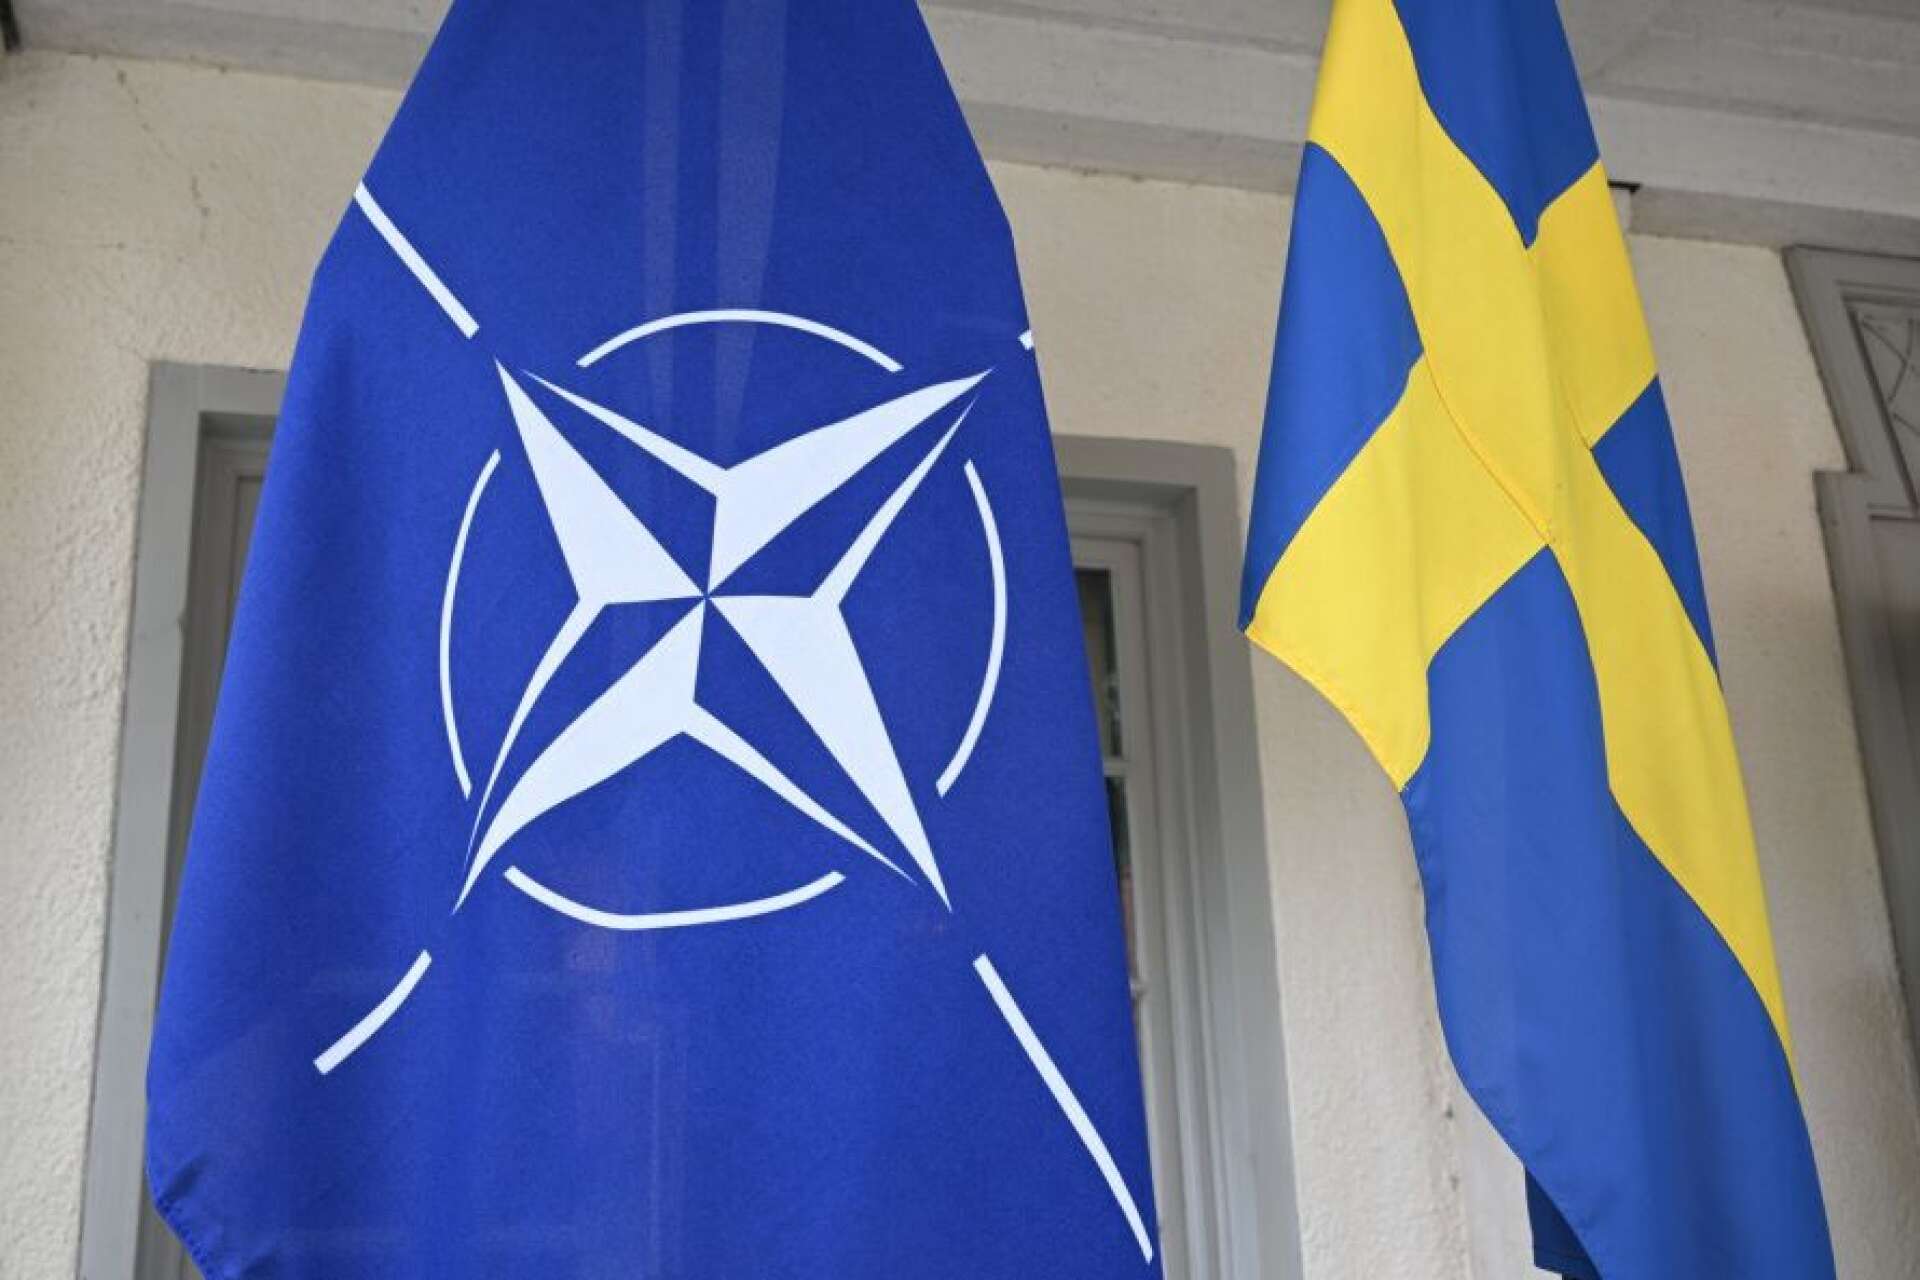 När Putin angrep Ukraina, som var oskyddat av Nato, förstod till sist även Sverige att det nu var dags att tänka om, säger Göran Johansson i insändaren.